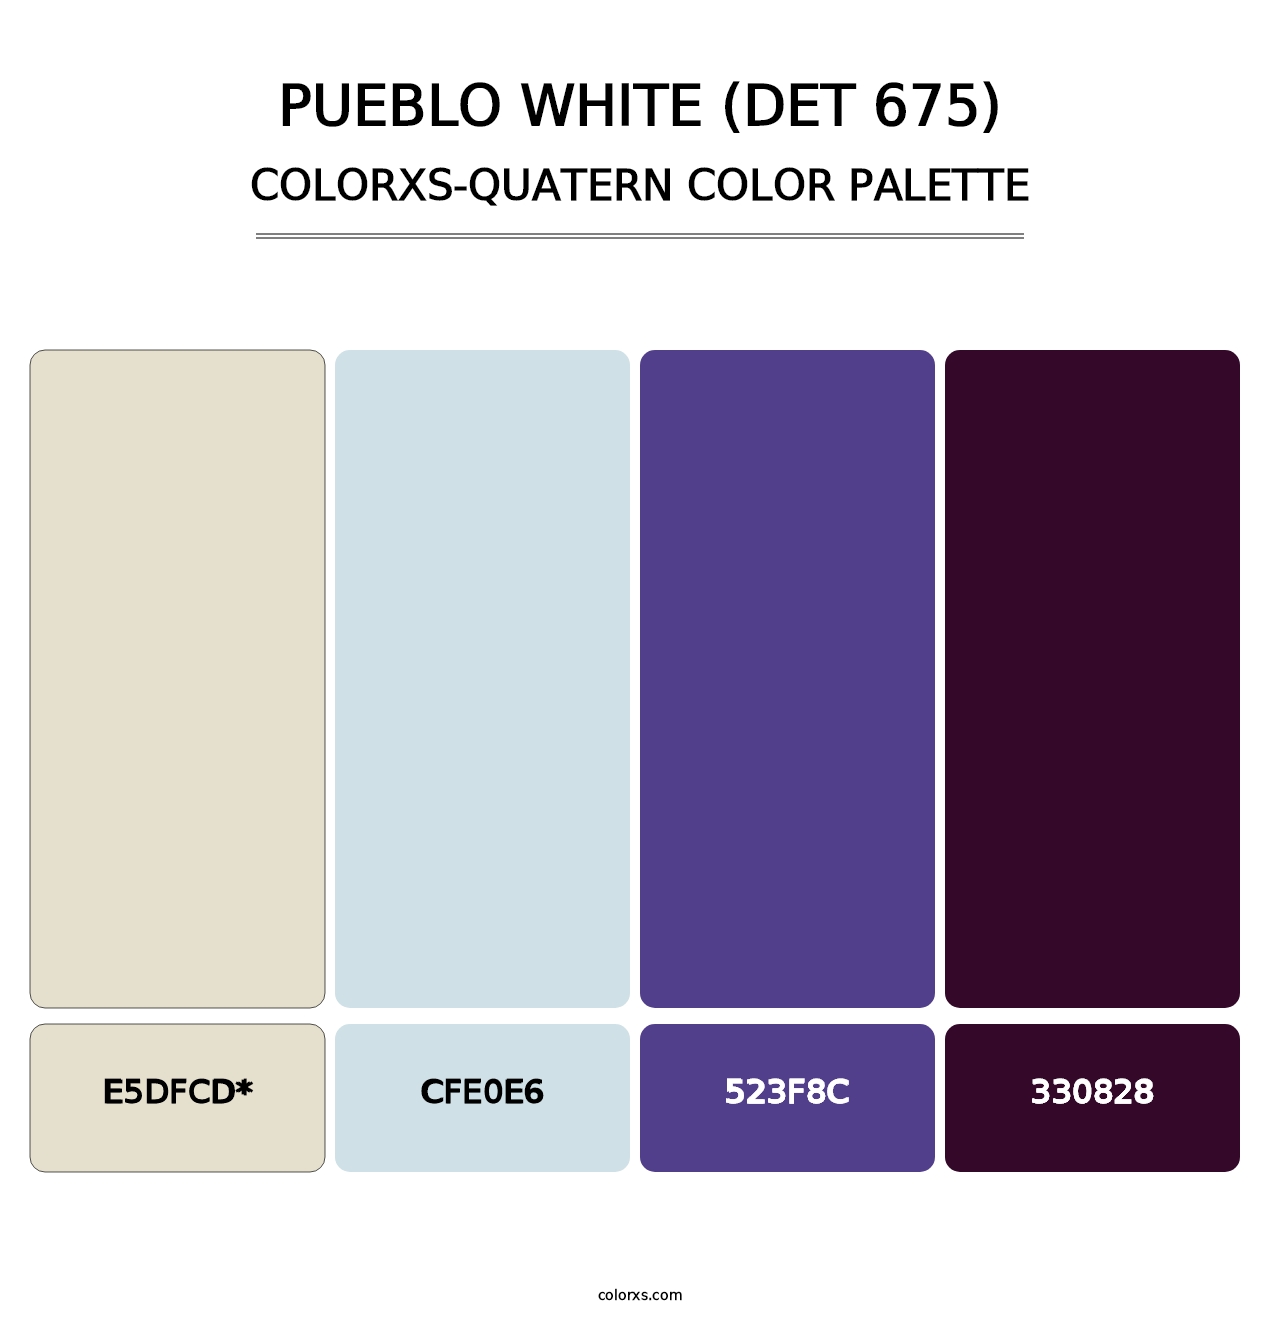 Pueblo White (DET 675) - Colorxs Quad Palette